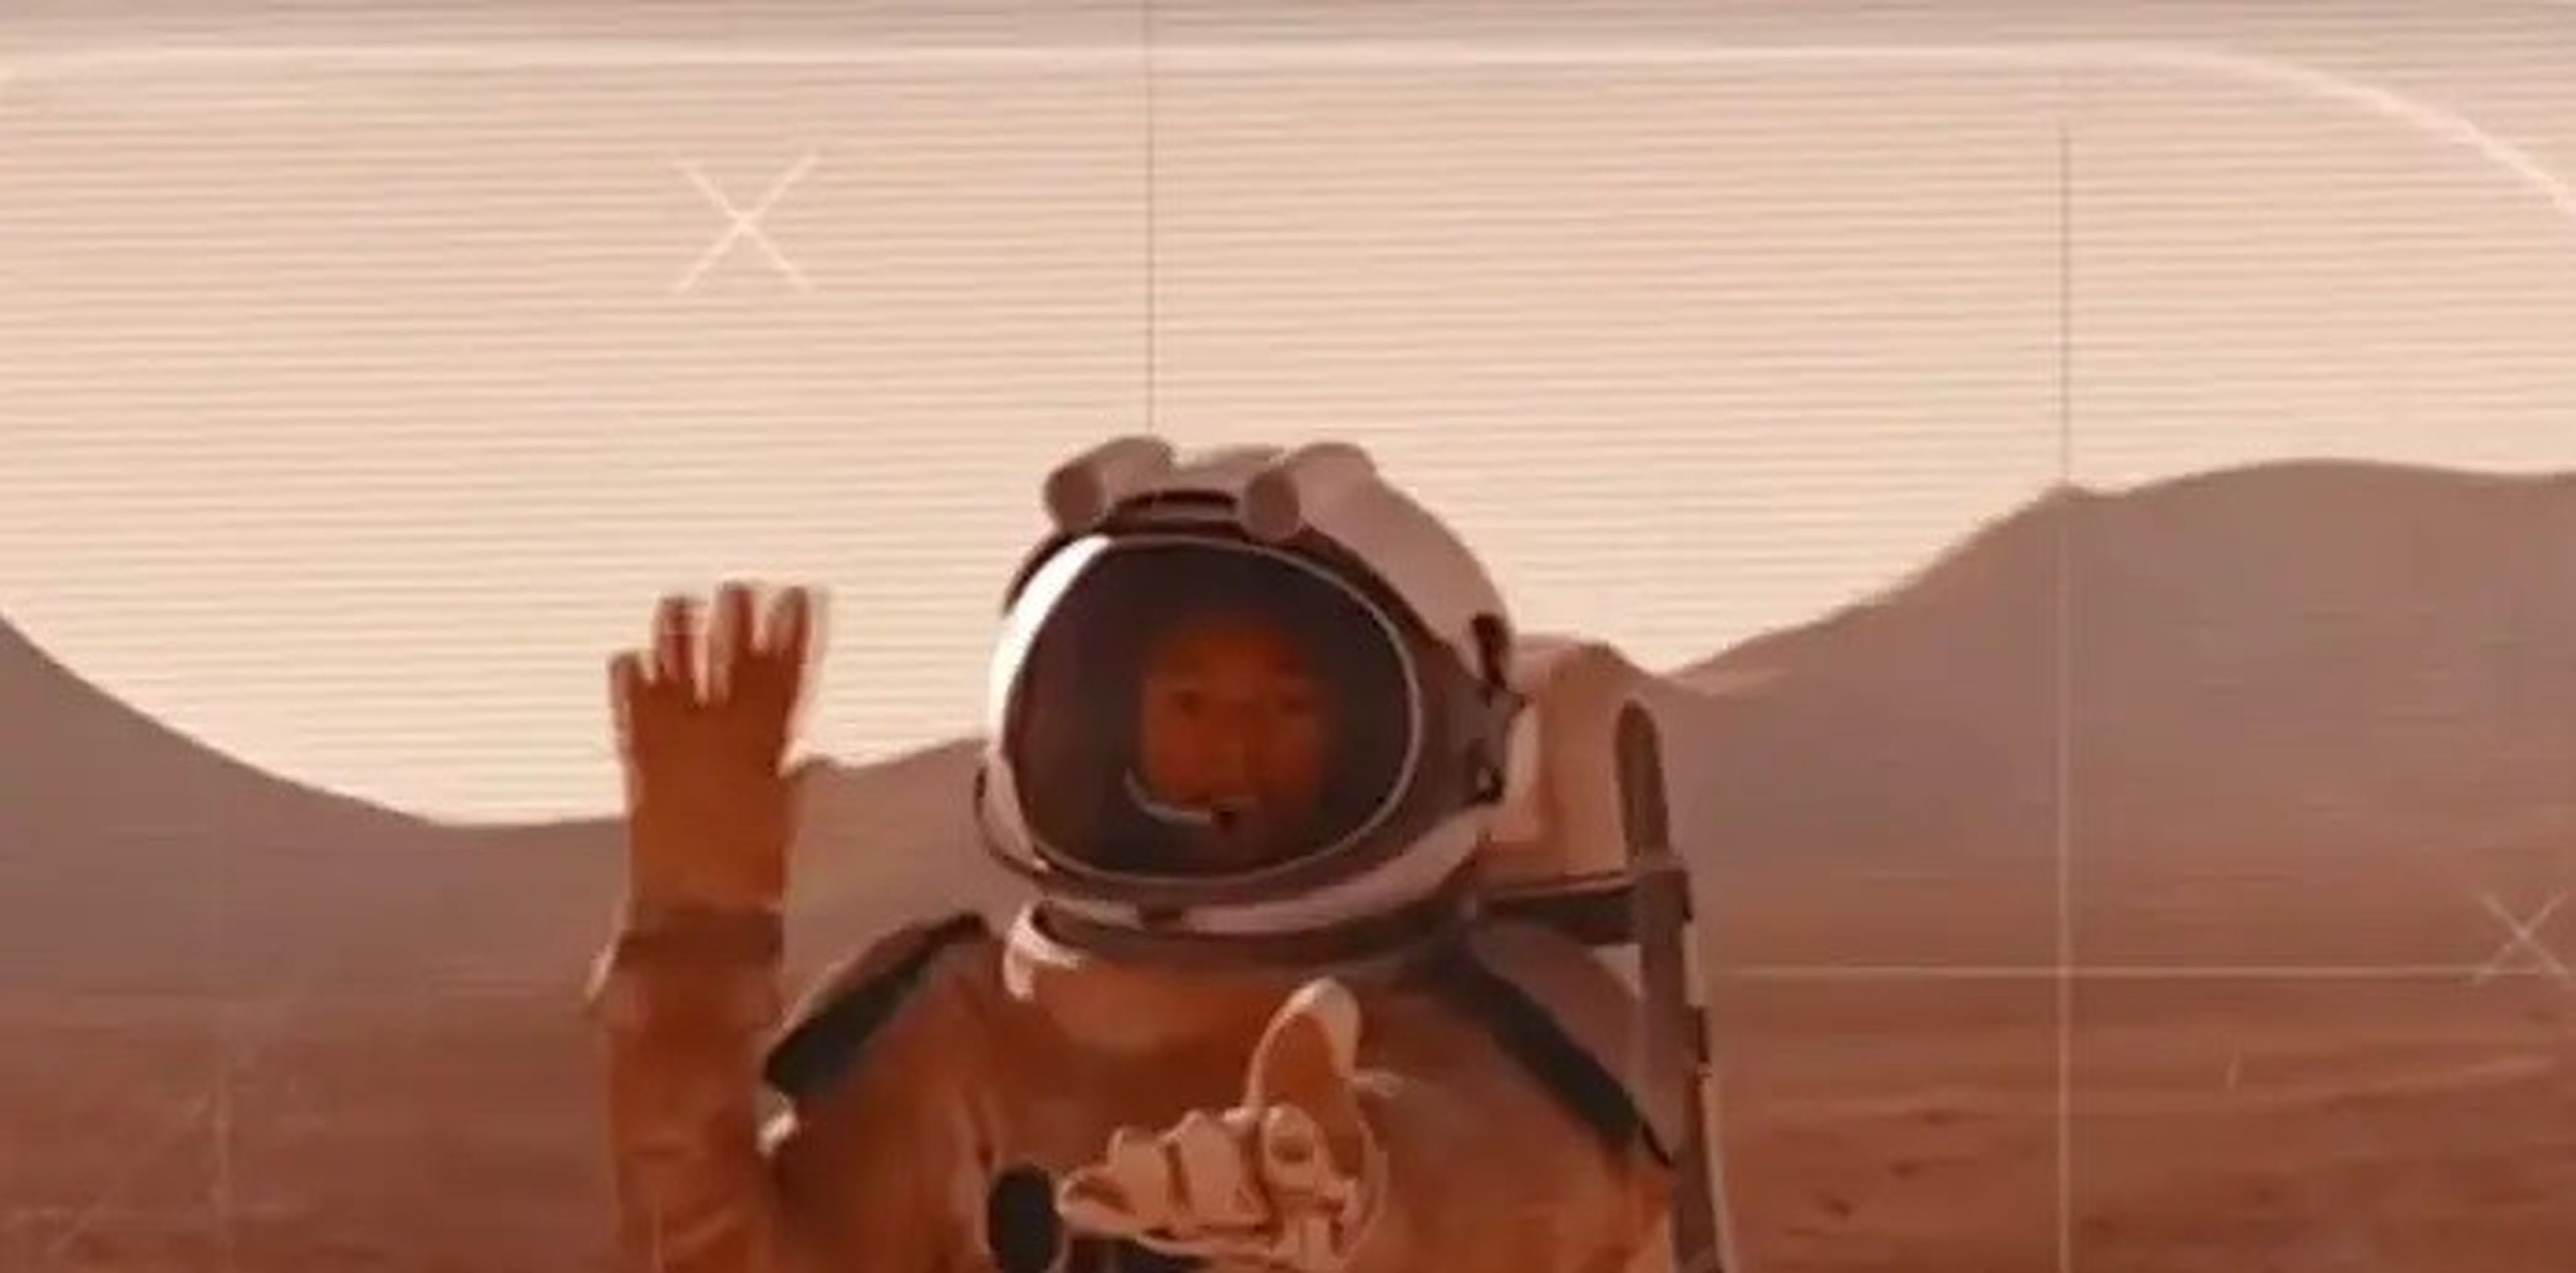 Una ilustración artística muestra a un astronauta retransmitiendo desde Marte.